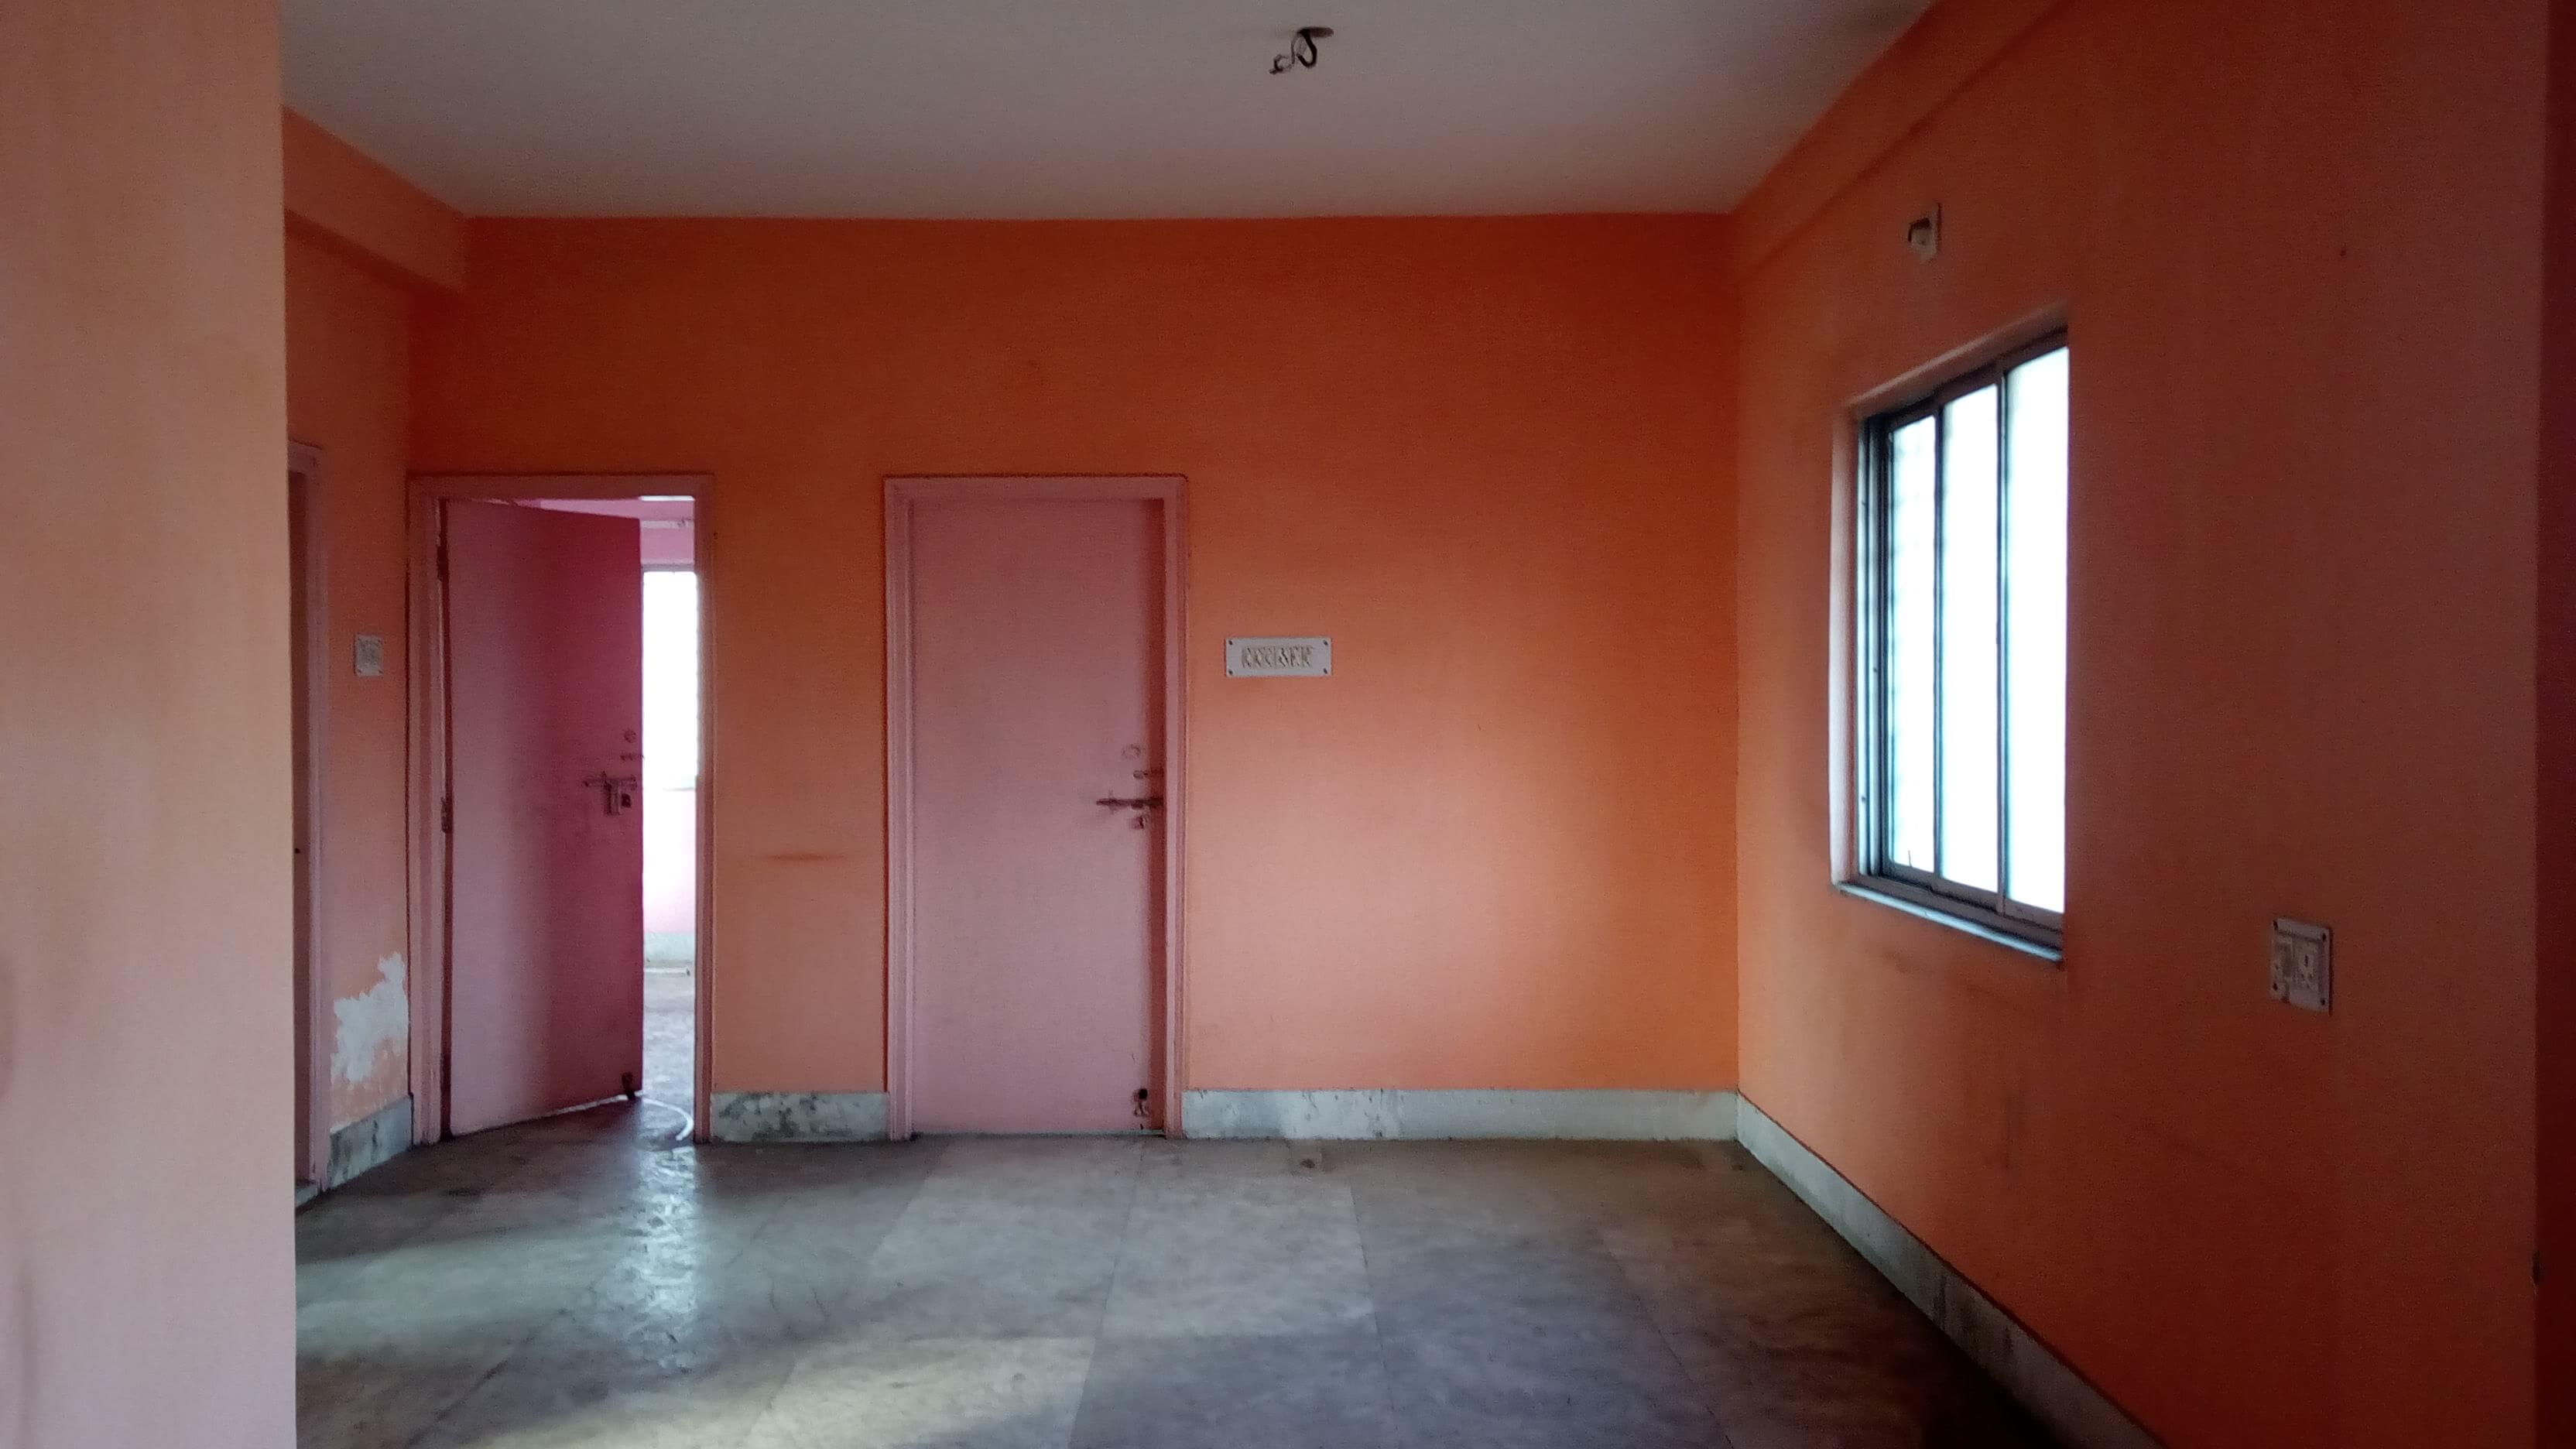 Flat For Rent in Manicktala,Kolkata (Id:21400)